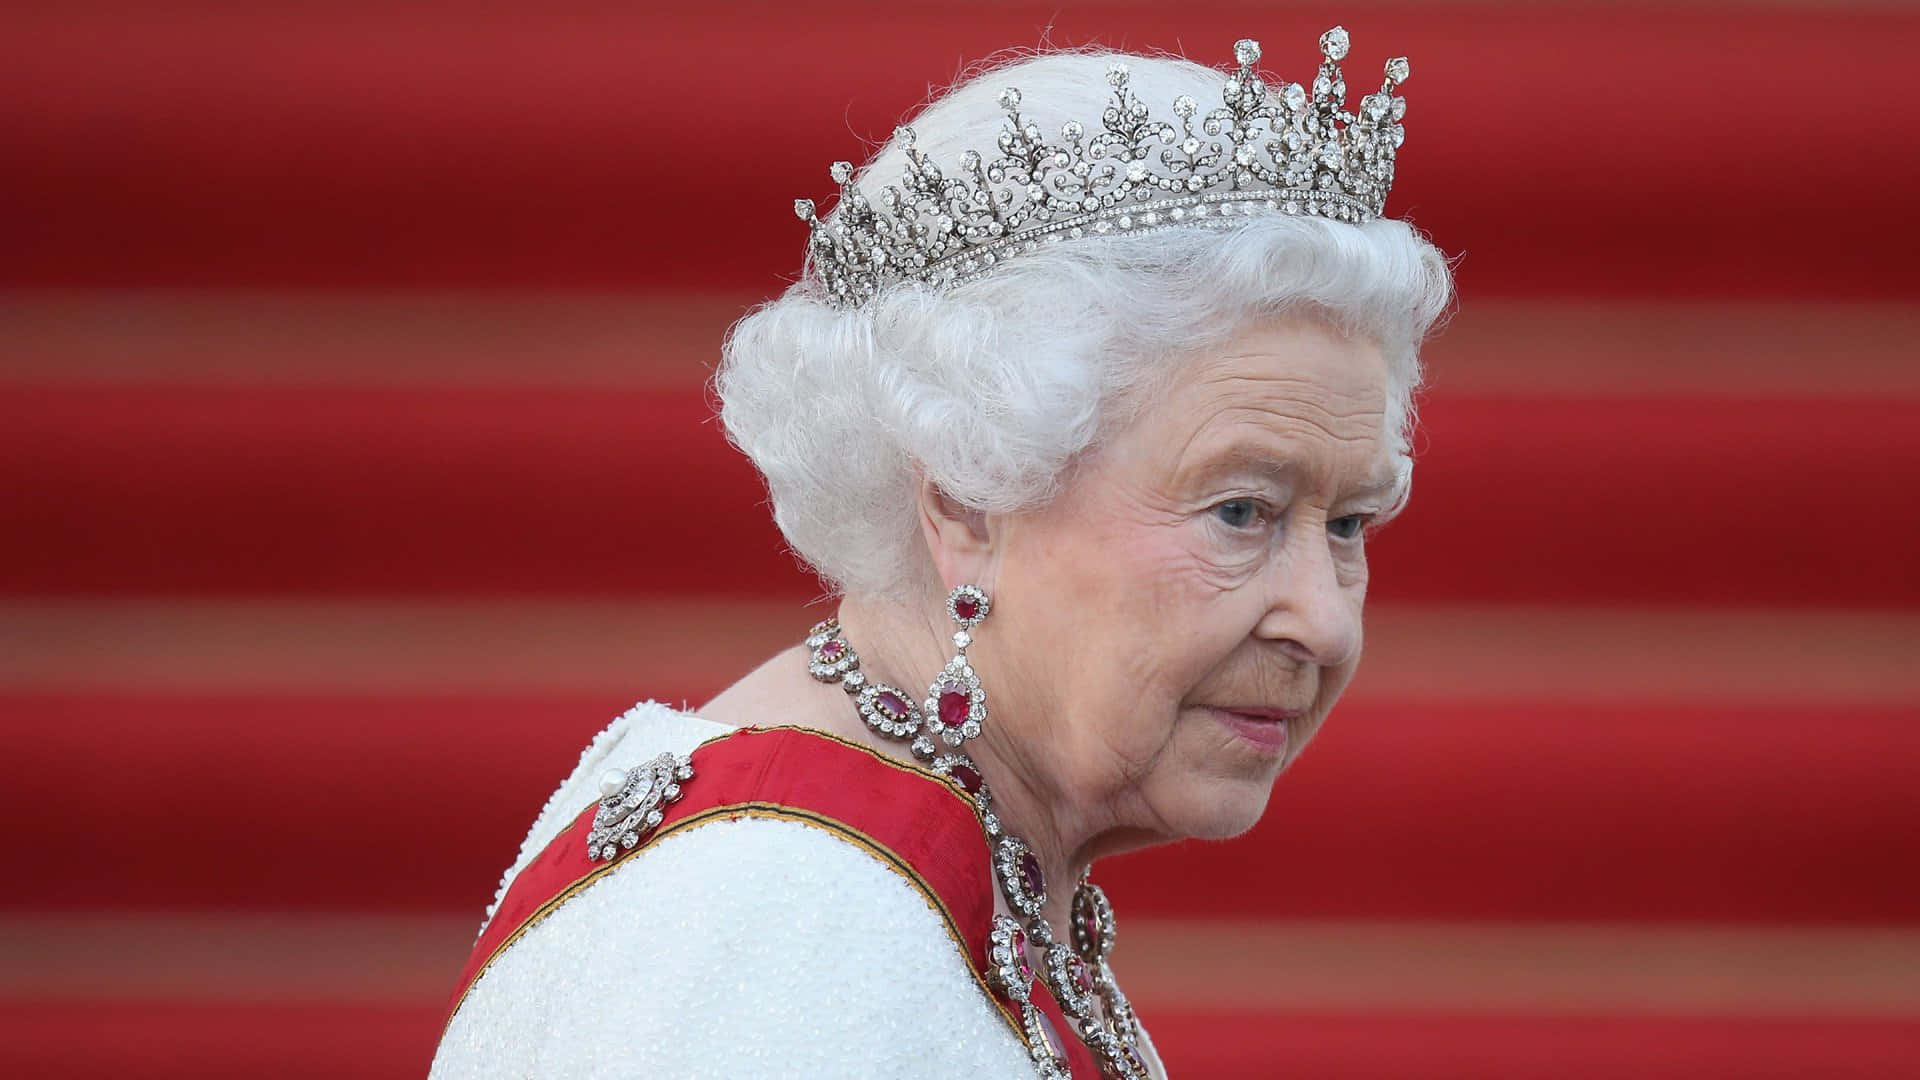 Queen Elizabeth II in her regal attire